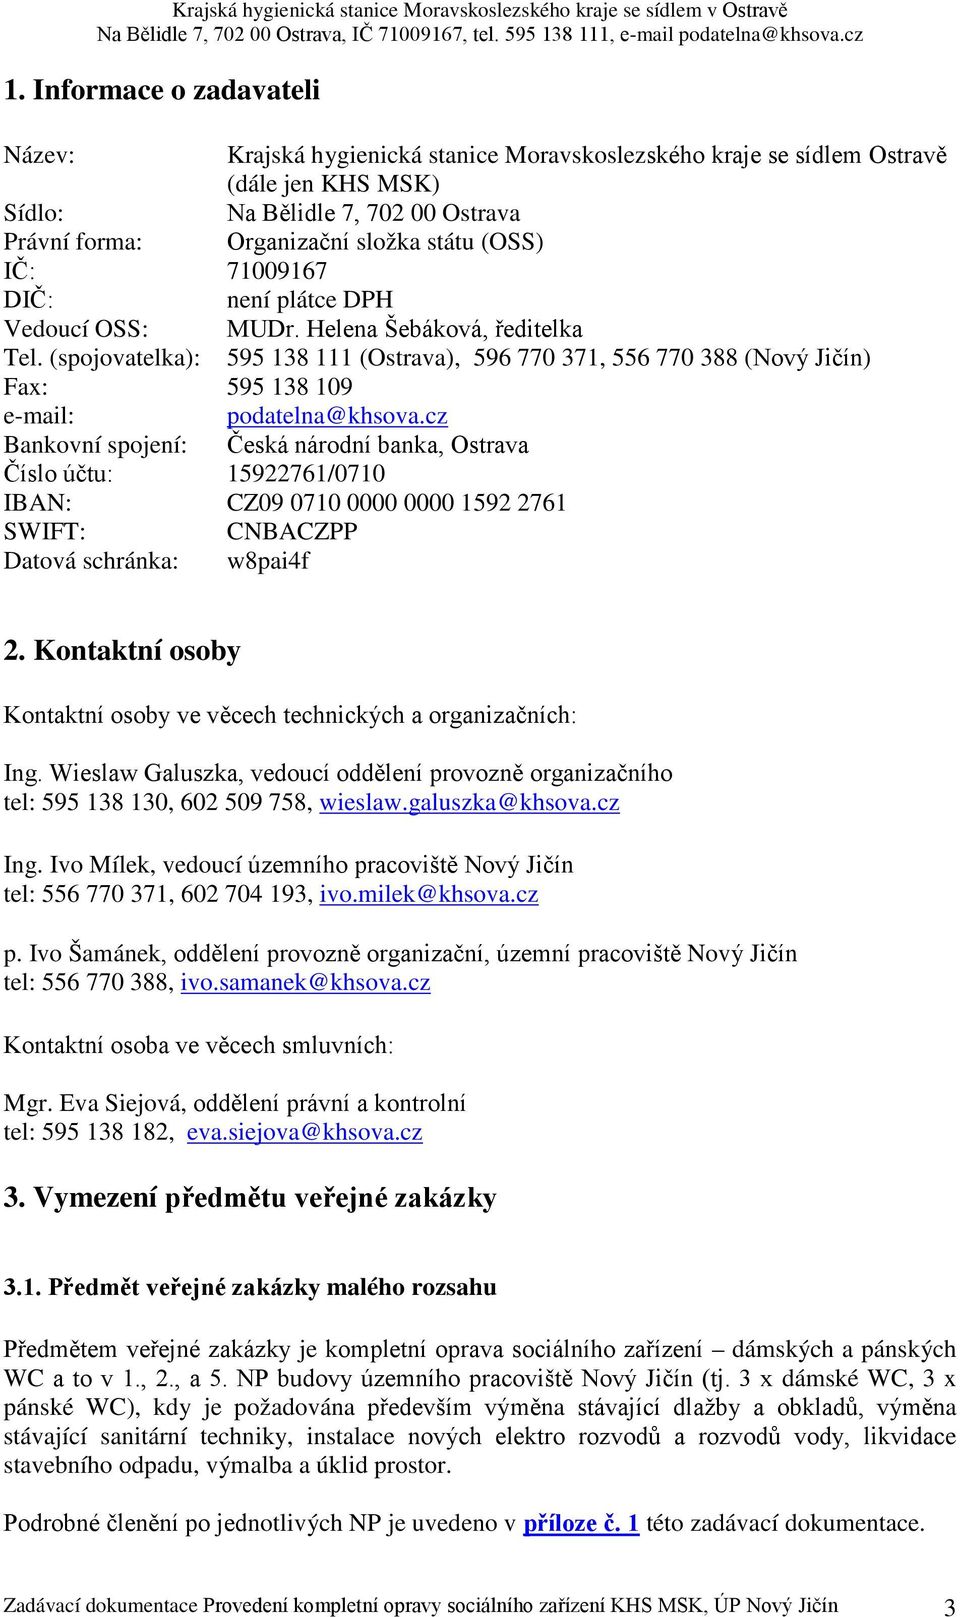 (spojovatelka): 595 138 111 (Ostrava), 596 770 371, 556 770 388 (Nový Jičín) Fax: 595 138 109 e-mail: podatelna@khsova.